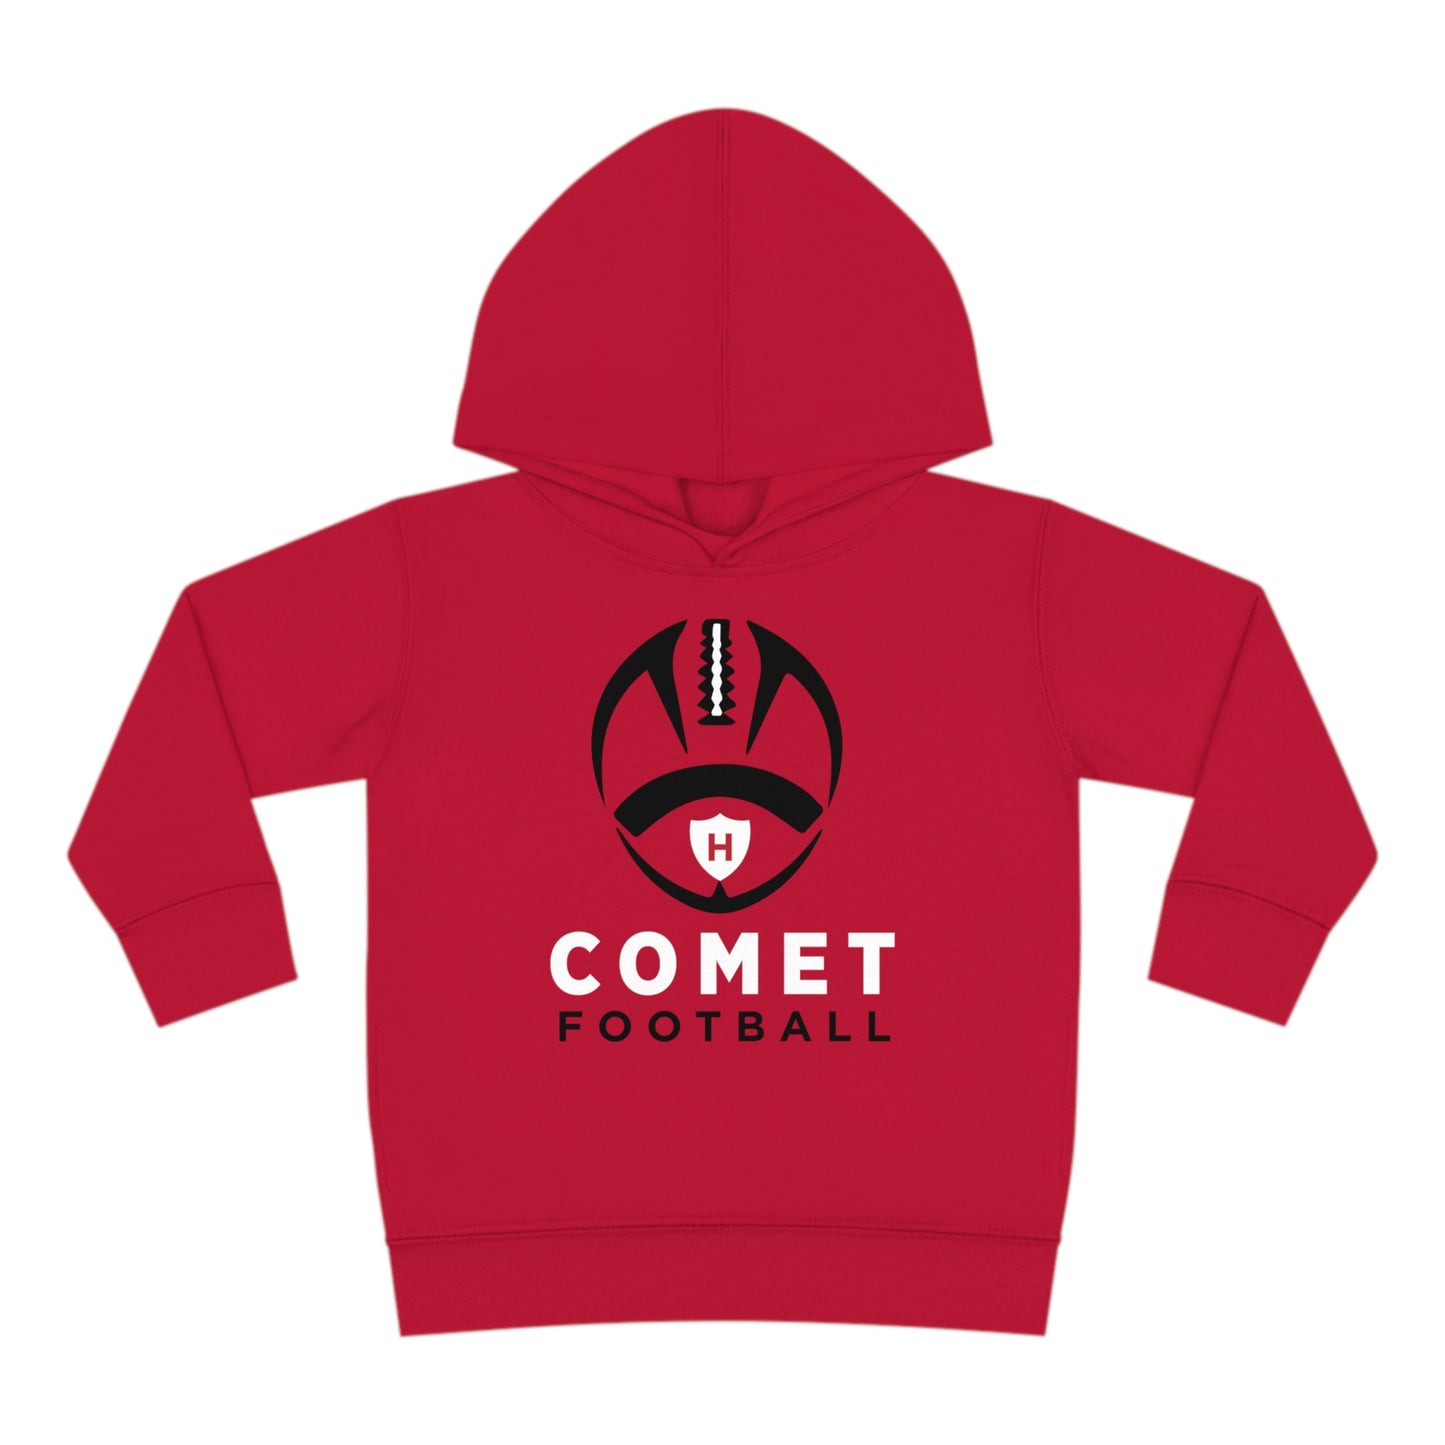 Comet Football - Toddler Pullover Fleece Hoodie